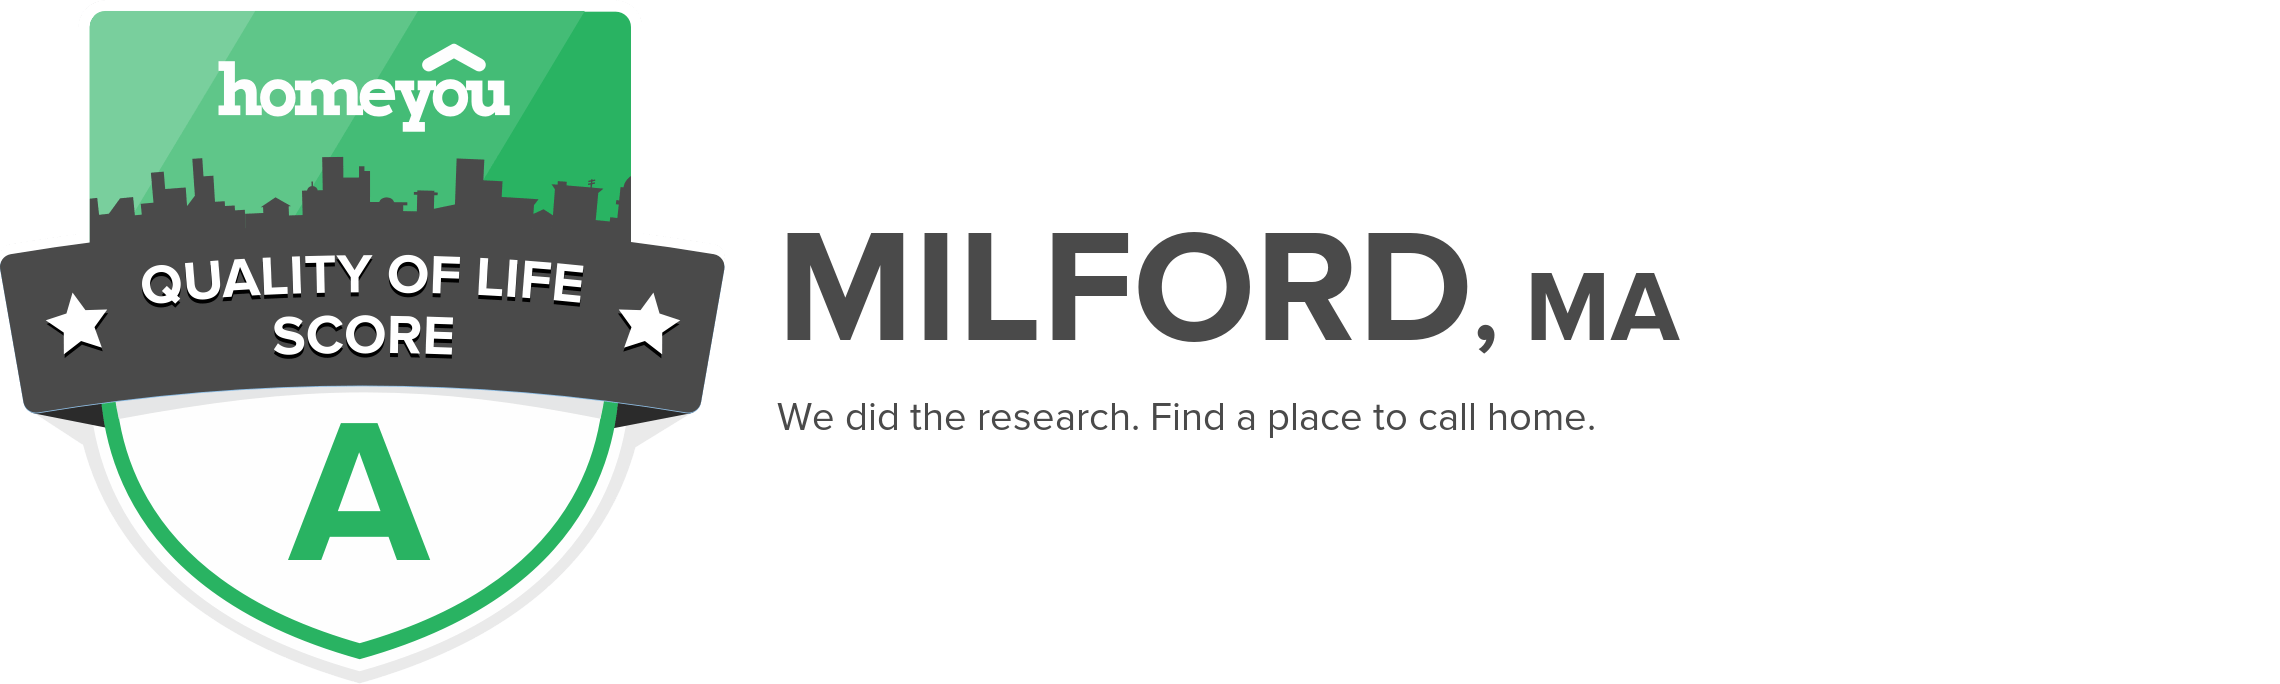 Milford, MA